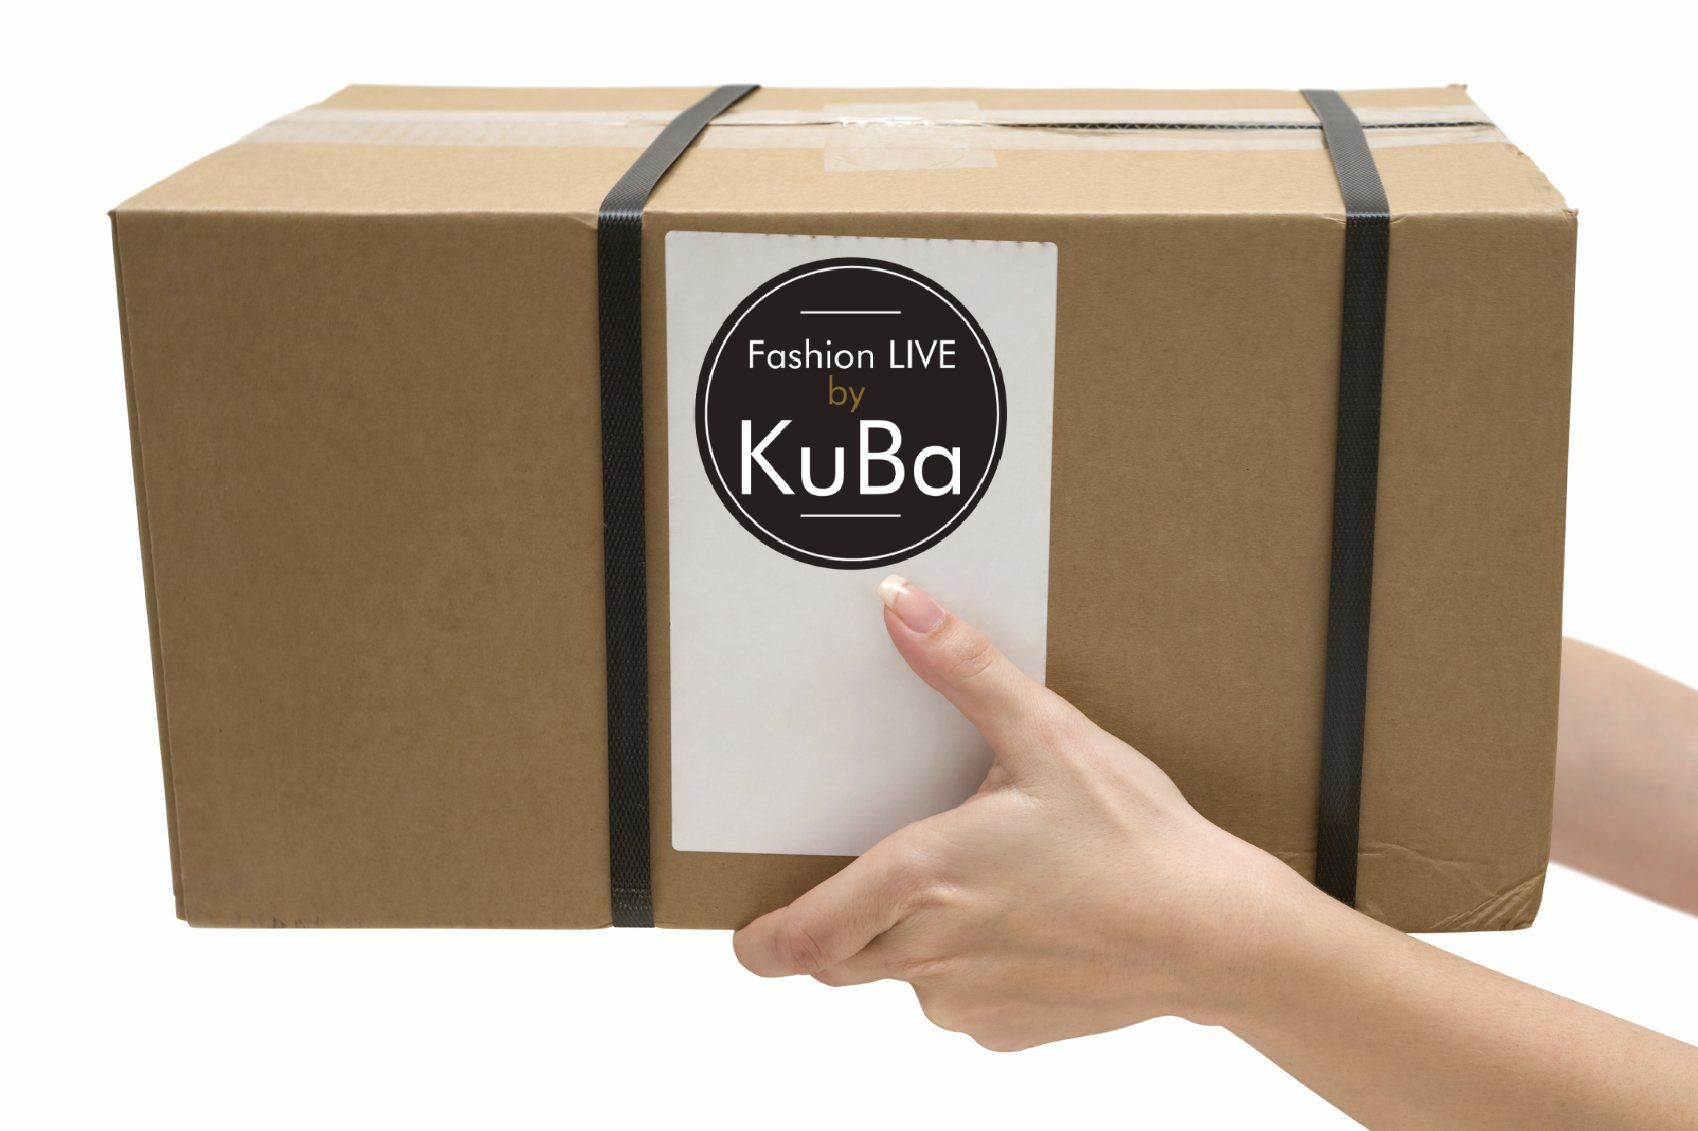 Paket mit KuBa Logo in Händen gehalten